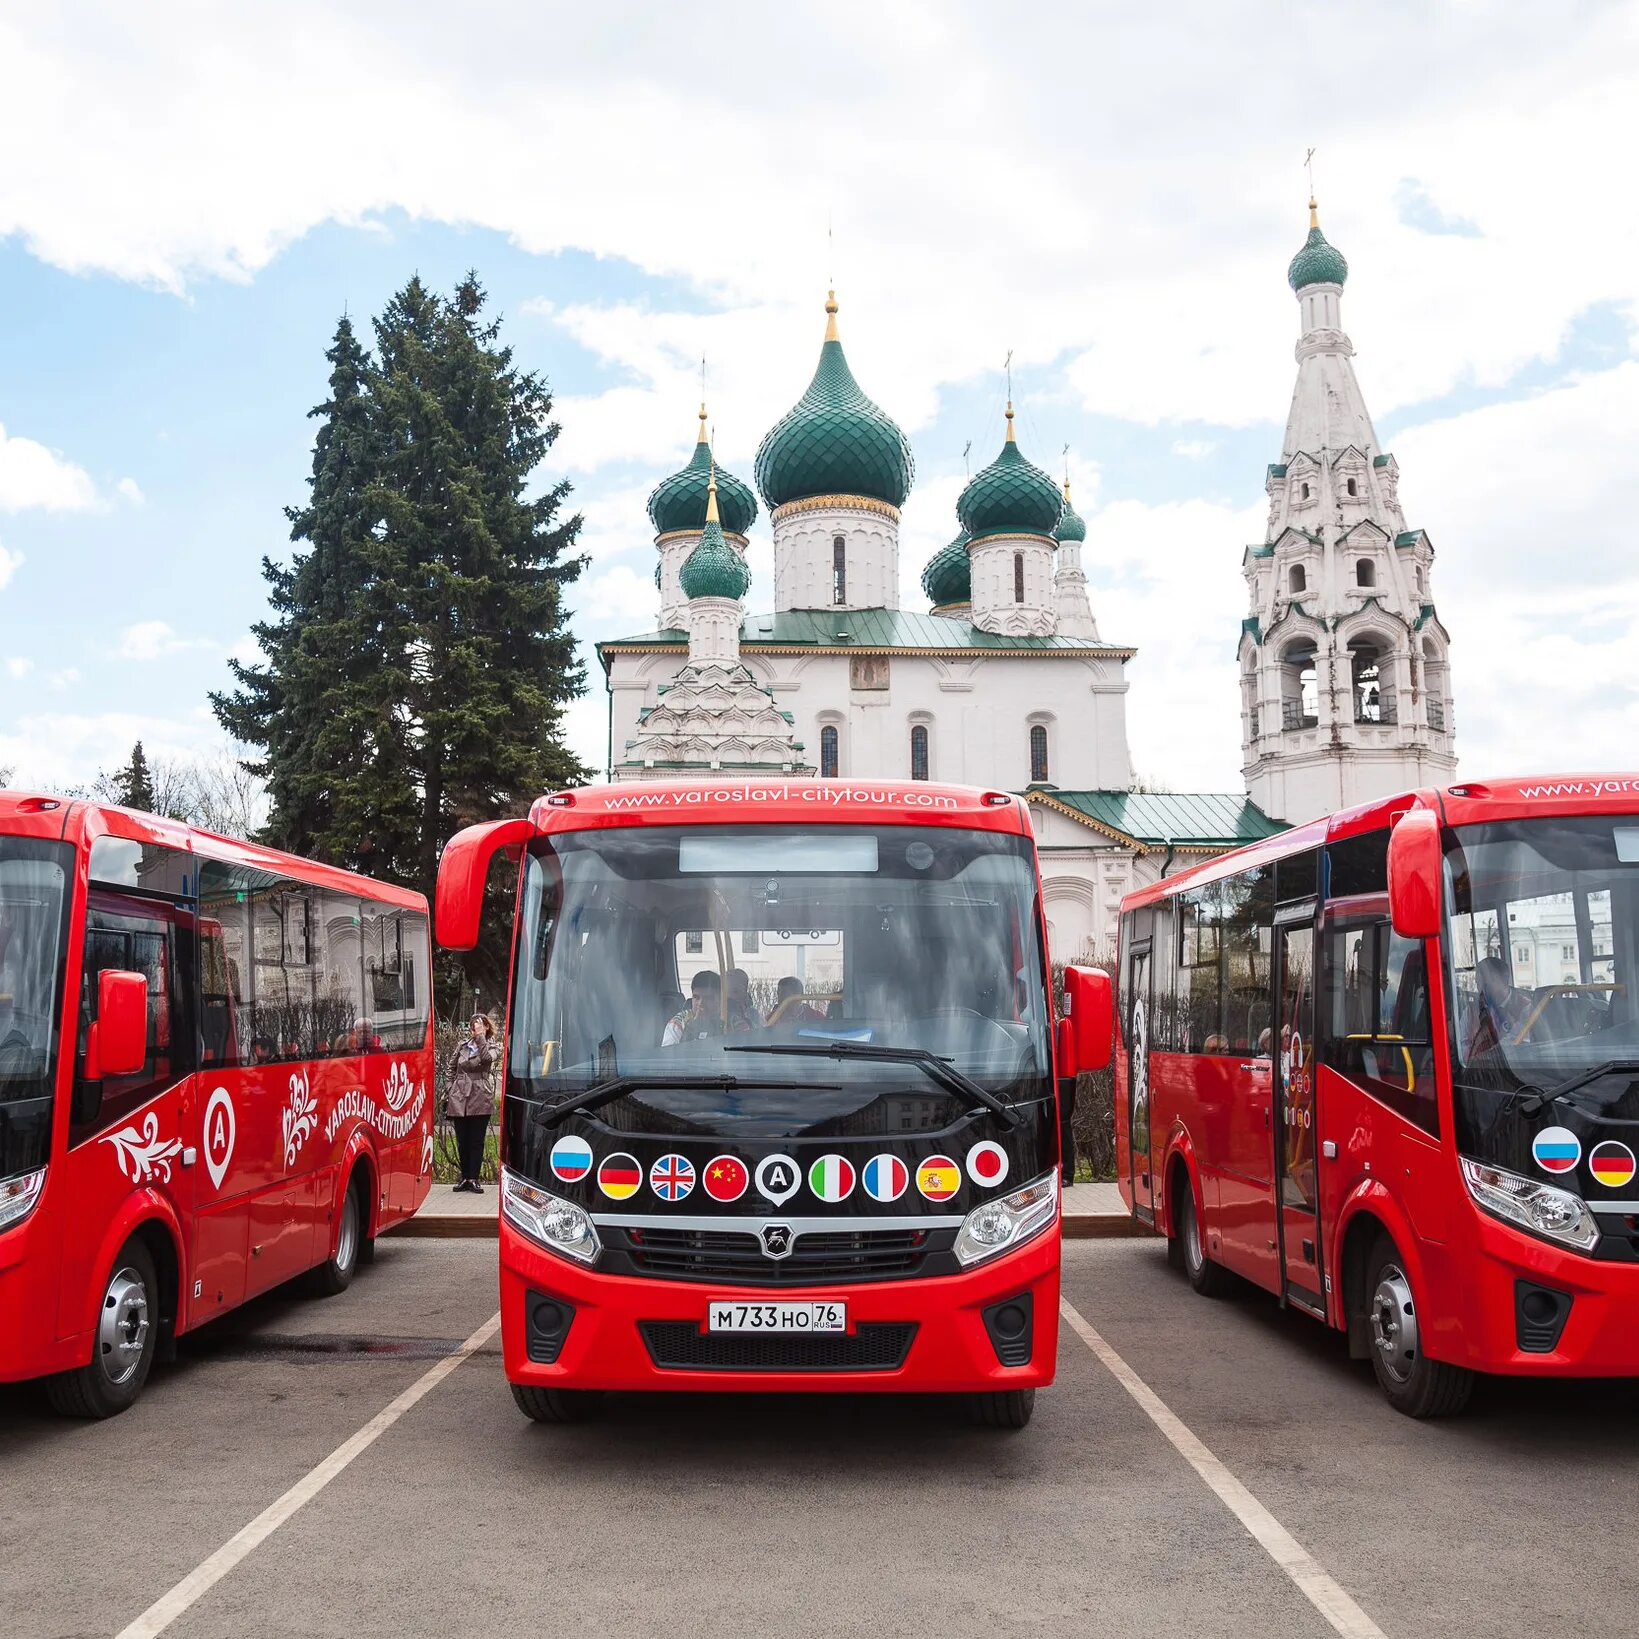 Многодневные автобусные туры. Ярославль обзорная экскурсия. Автобусный тур. Автобусная экскурсия. Экскурсия на автобусе.